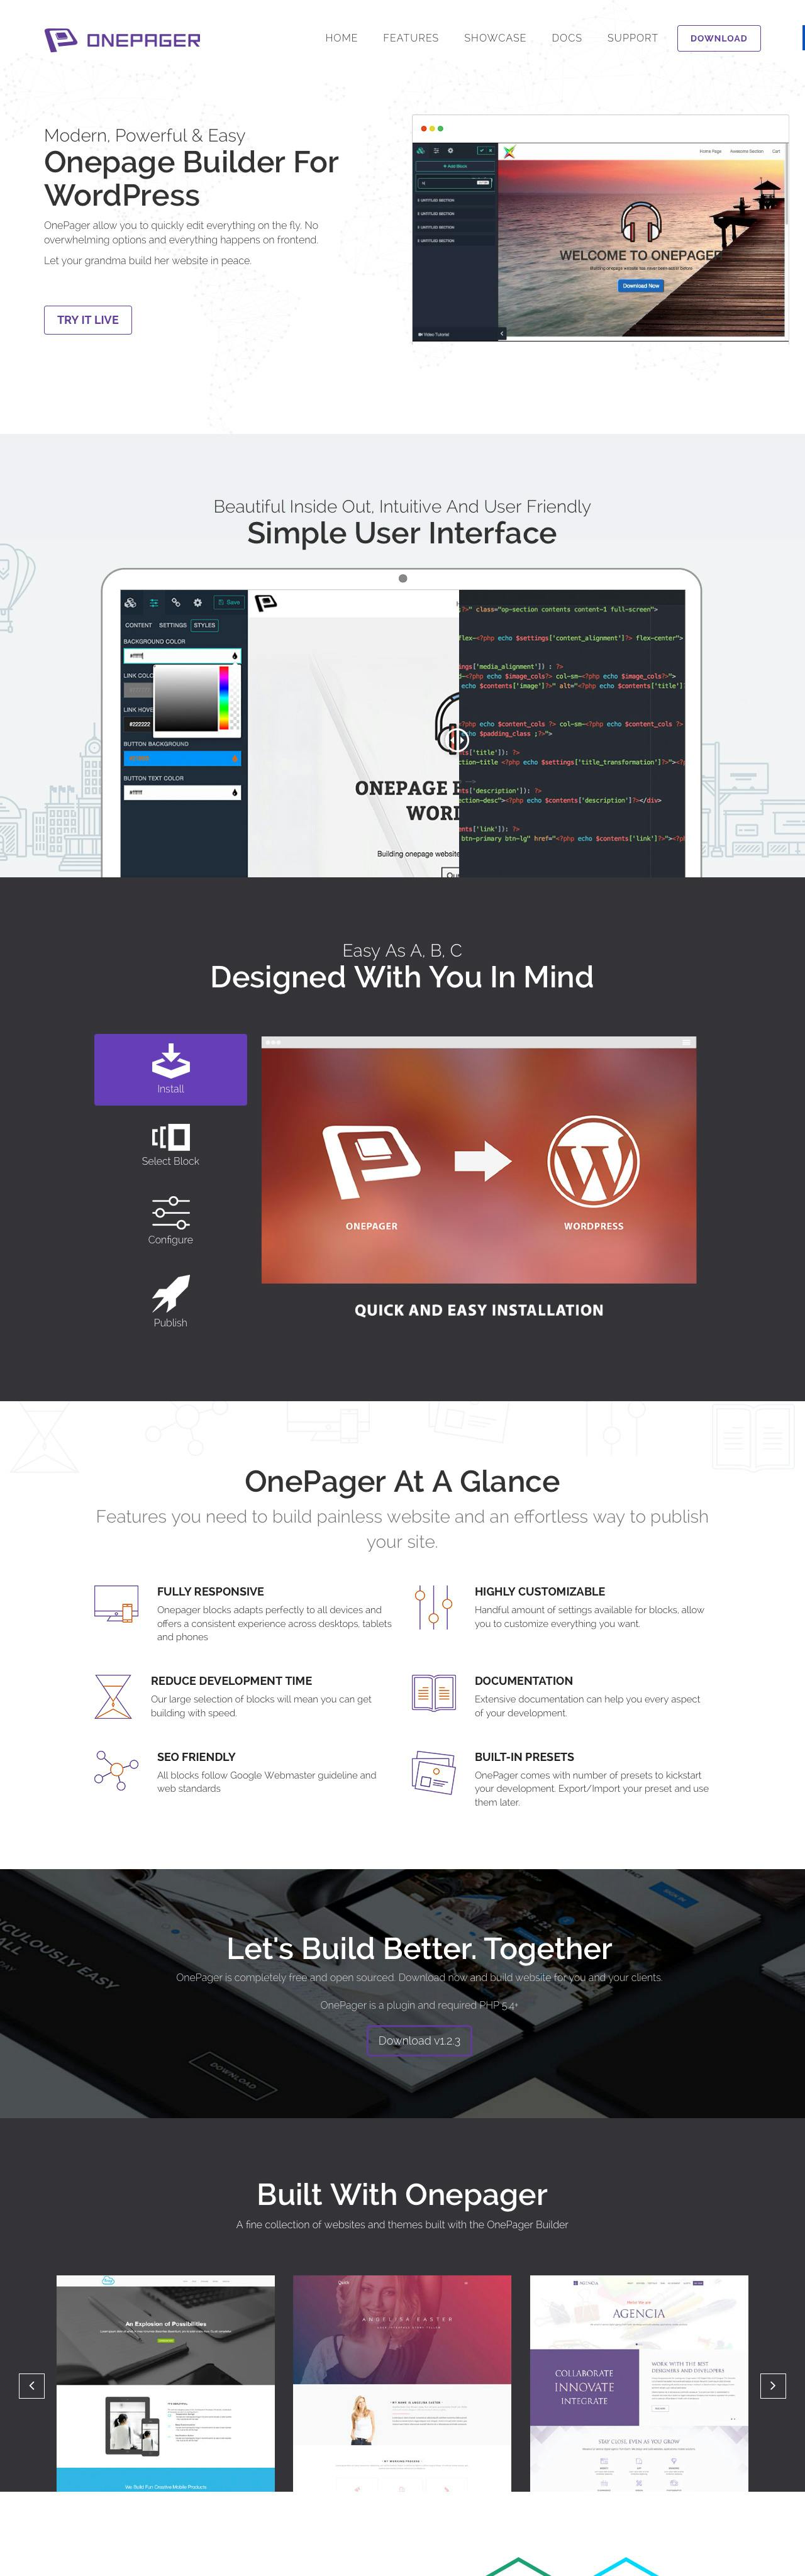 OnePage Builder Website Screenshot